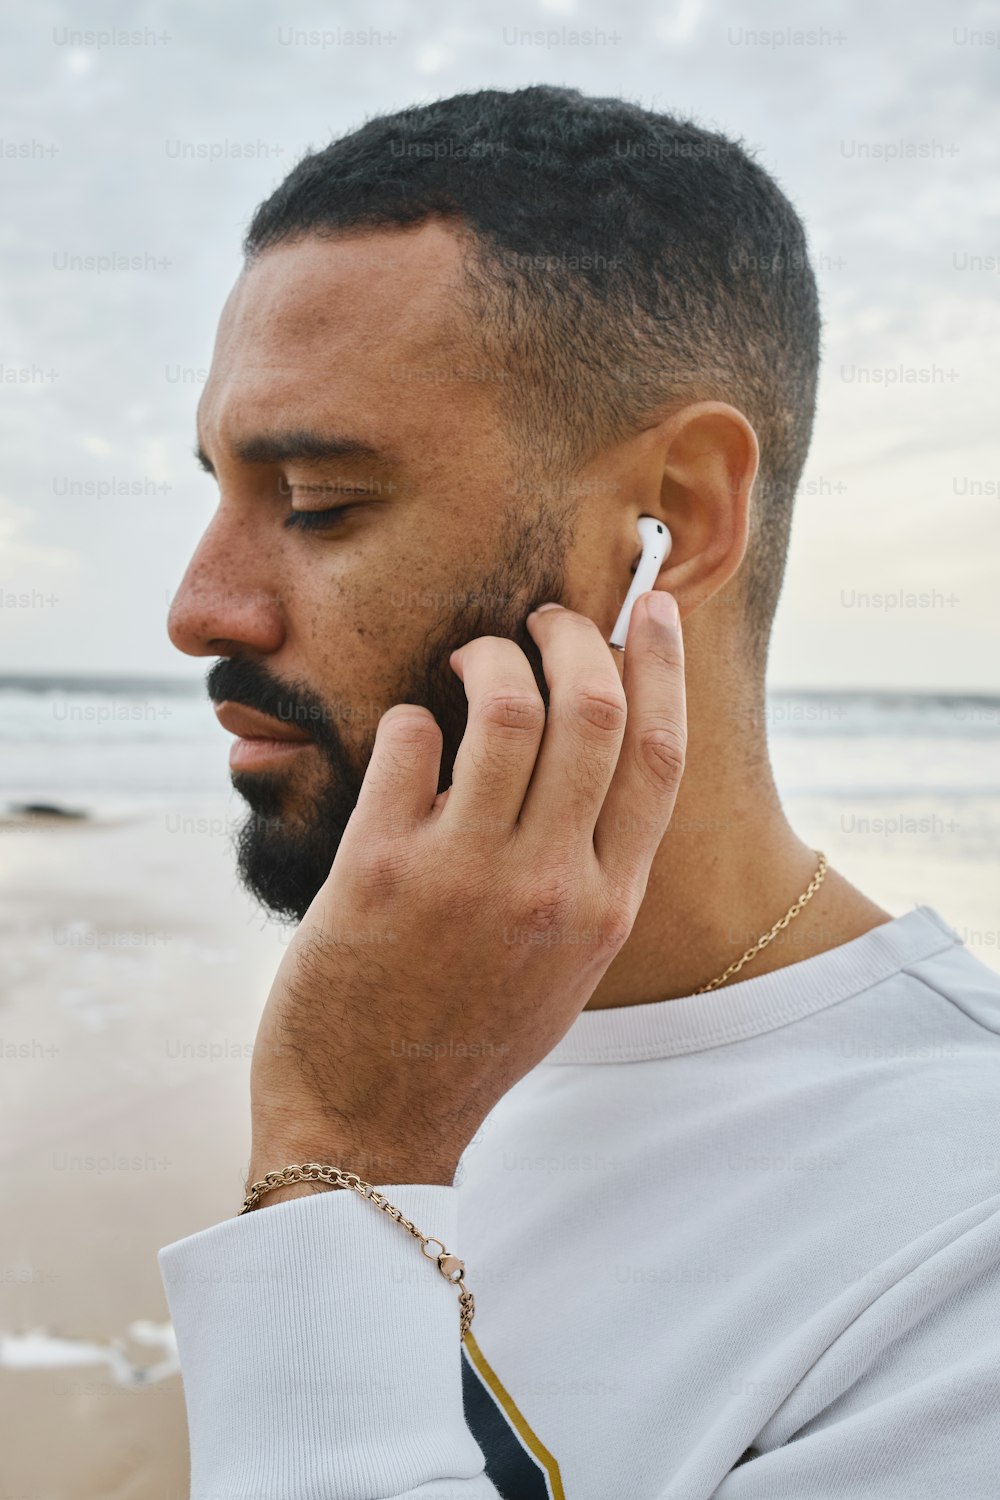 Un homme parle au téléphone portable sur la plage